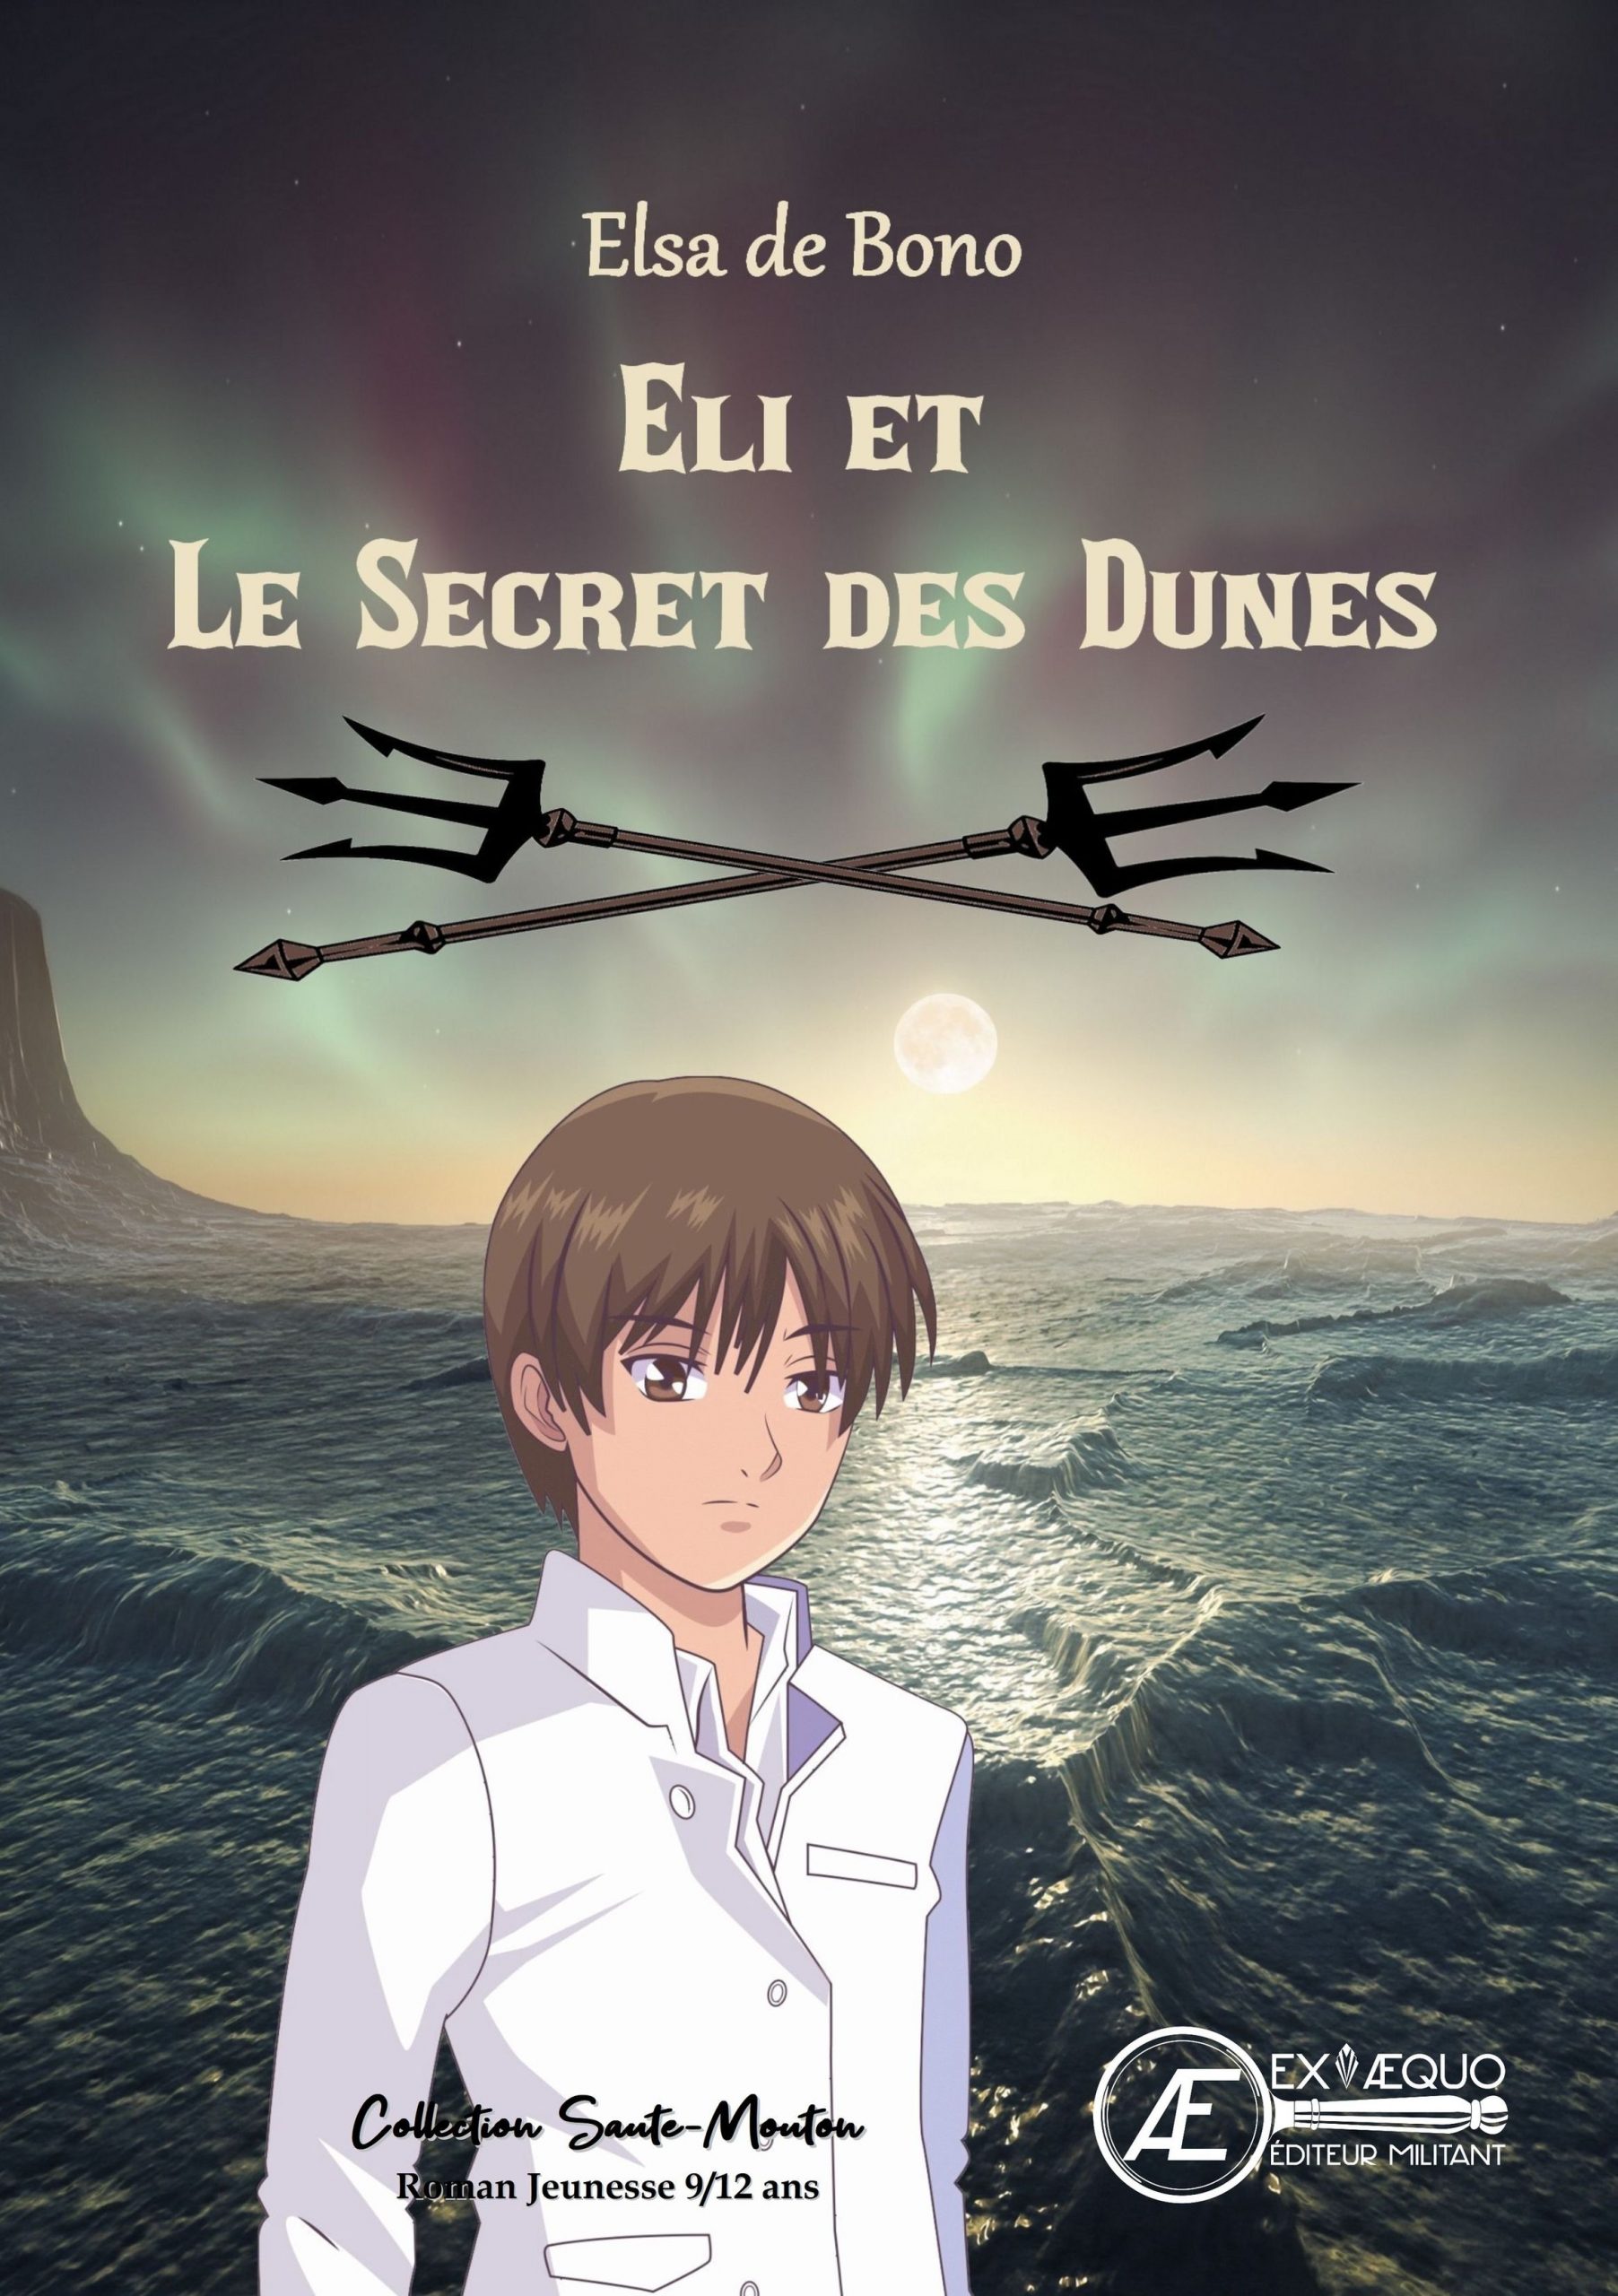 You are currently viewing Eli et le secret des dunes, d’Elsa de Bono